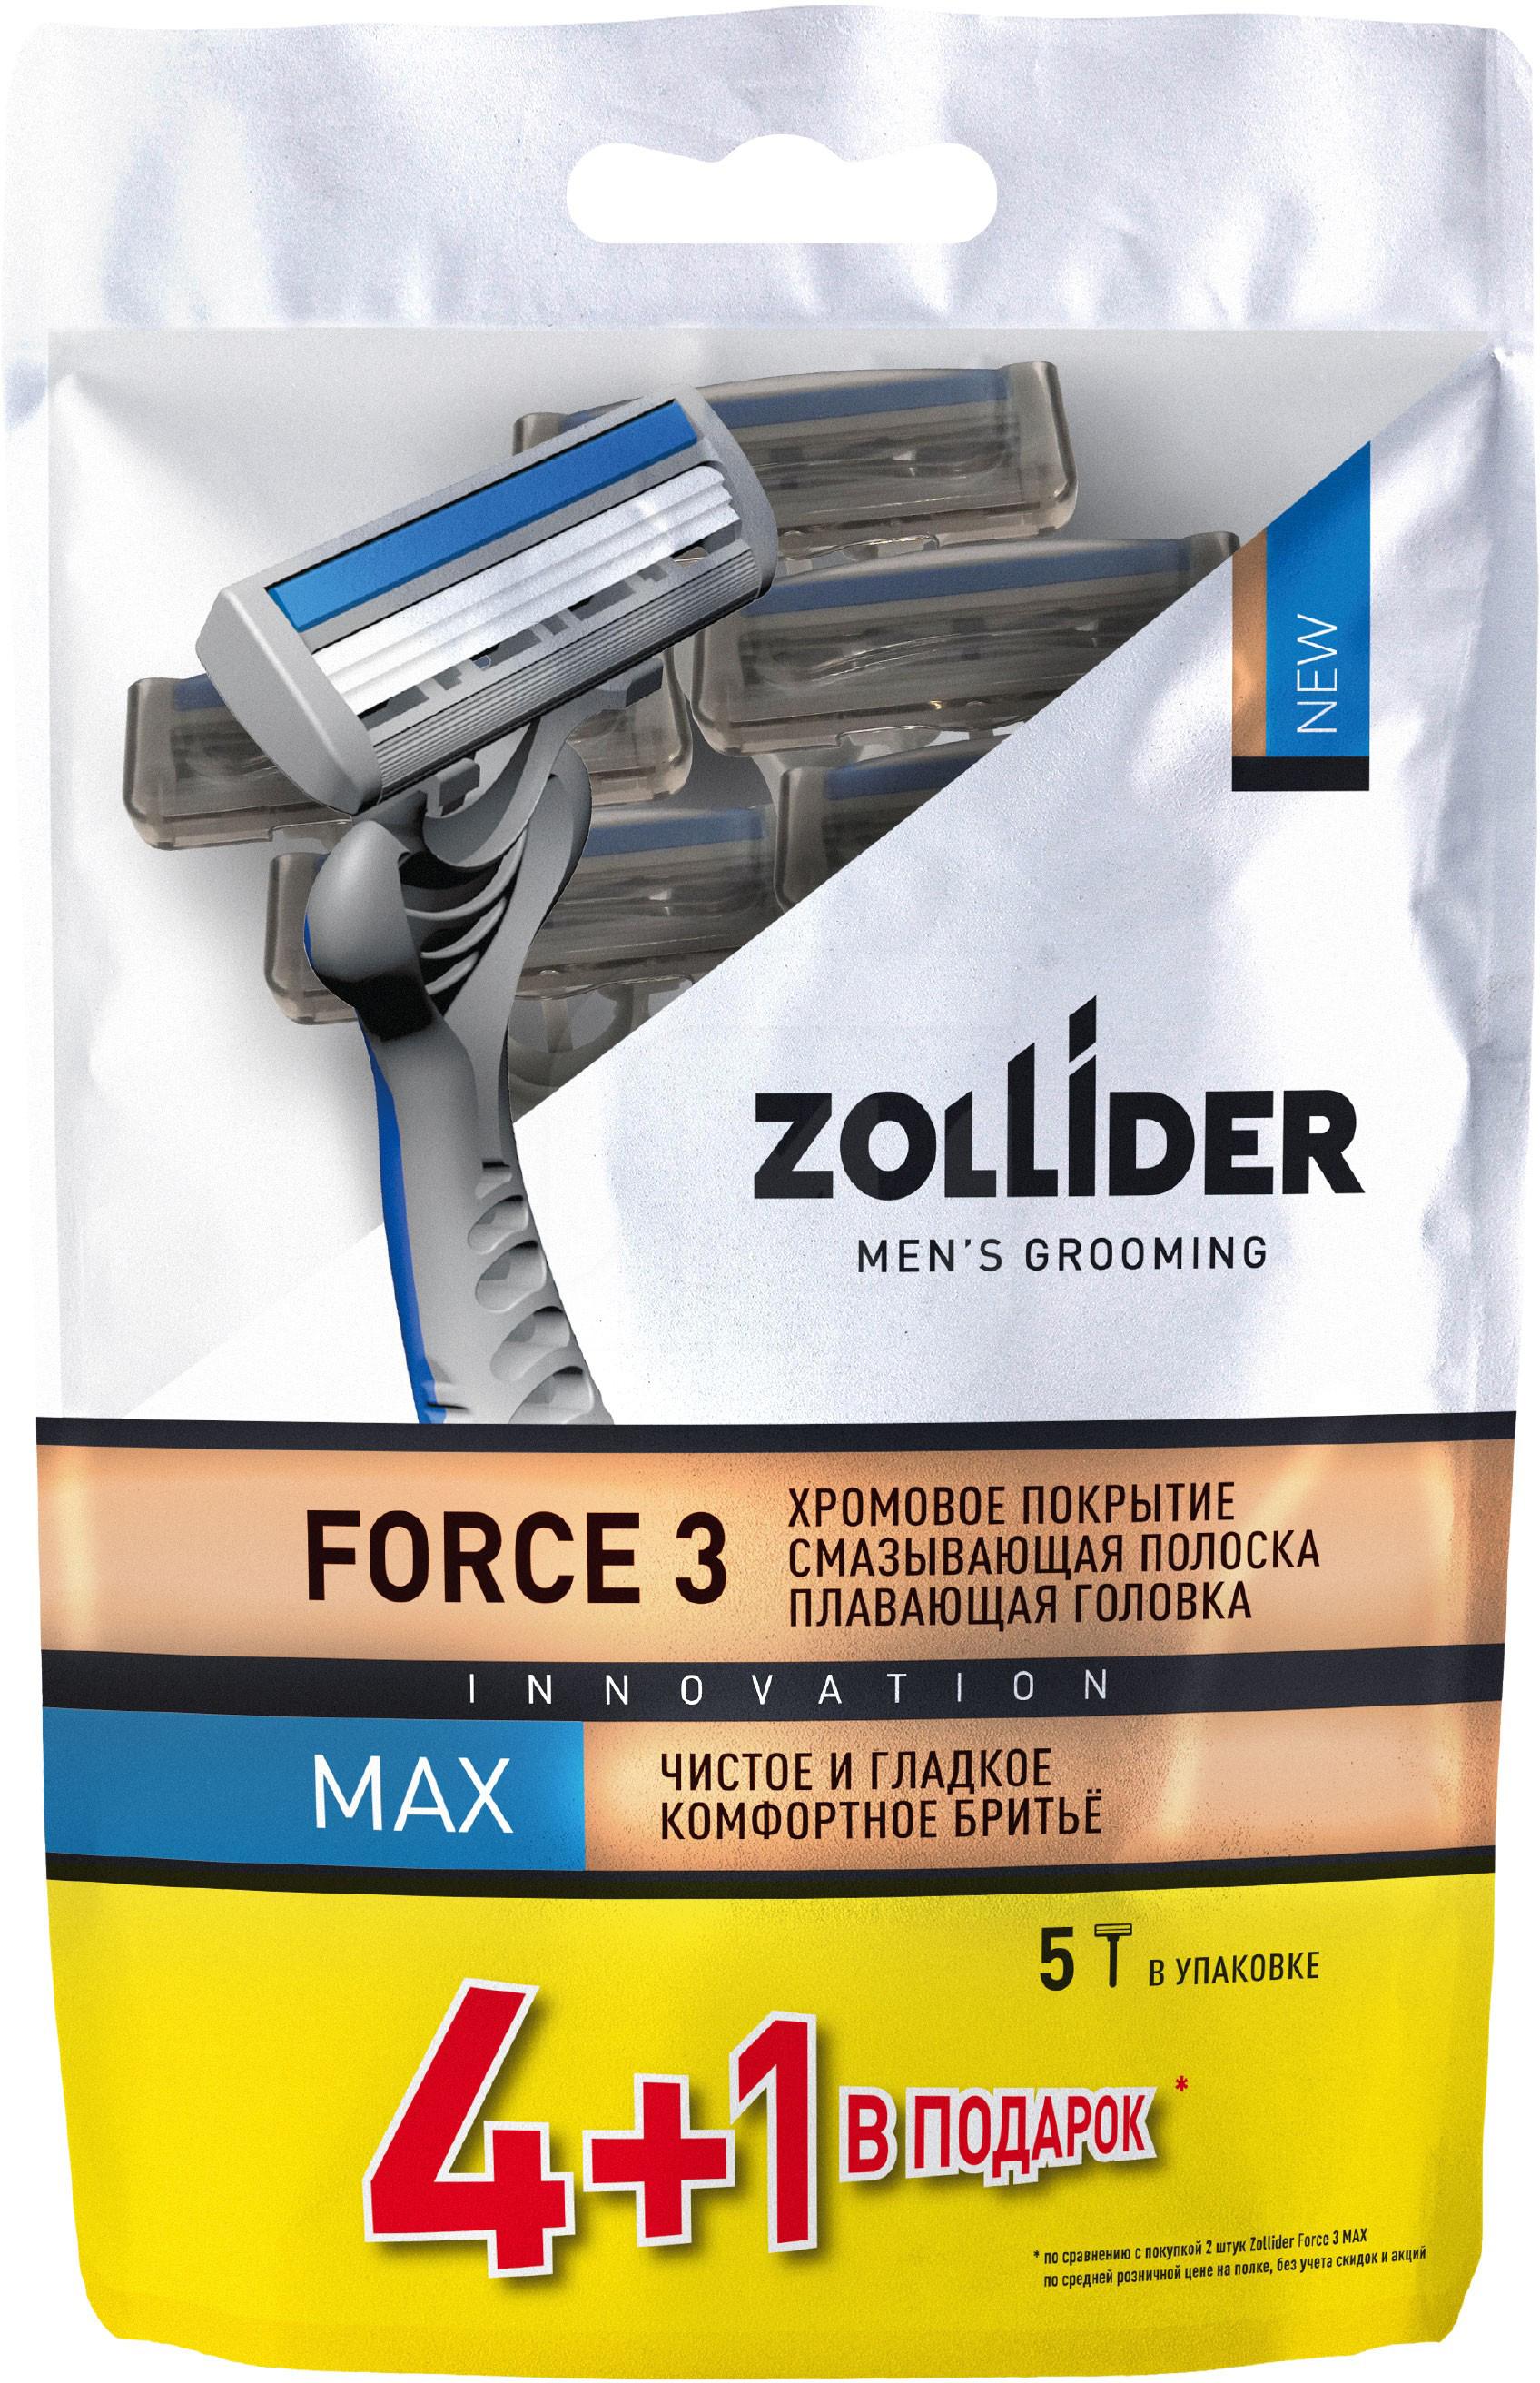 Бритвенные станки мужские Zollider Force 3 Max одноразовые с тройными лезвиями 4 + 1 шт бритвенные станки одноразовые spa for men 2 лезвия 1 шт 24 шт